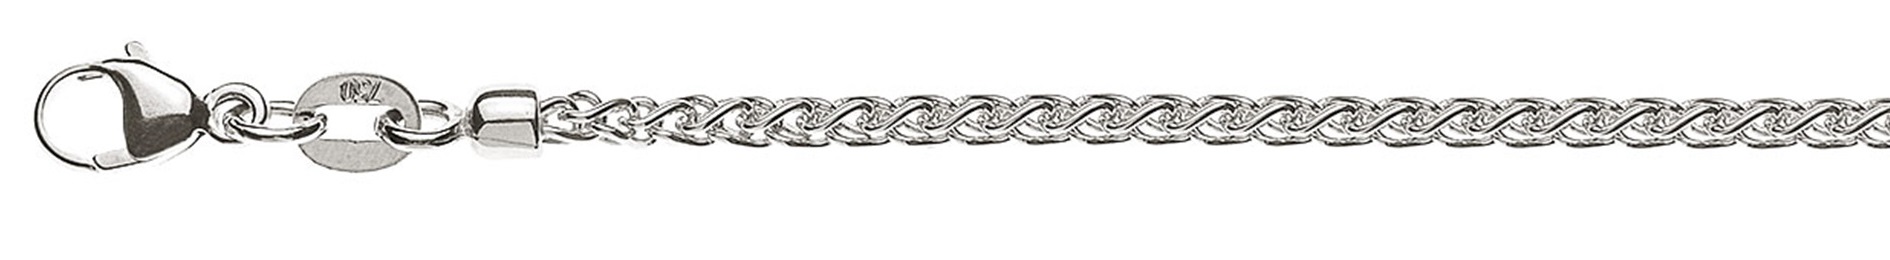 AURONOS Prestige Necklace white gold 18K cable chain 42cm 2.15mm